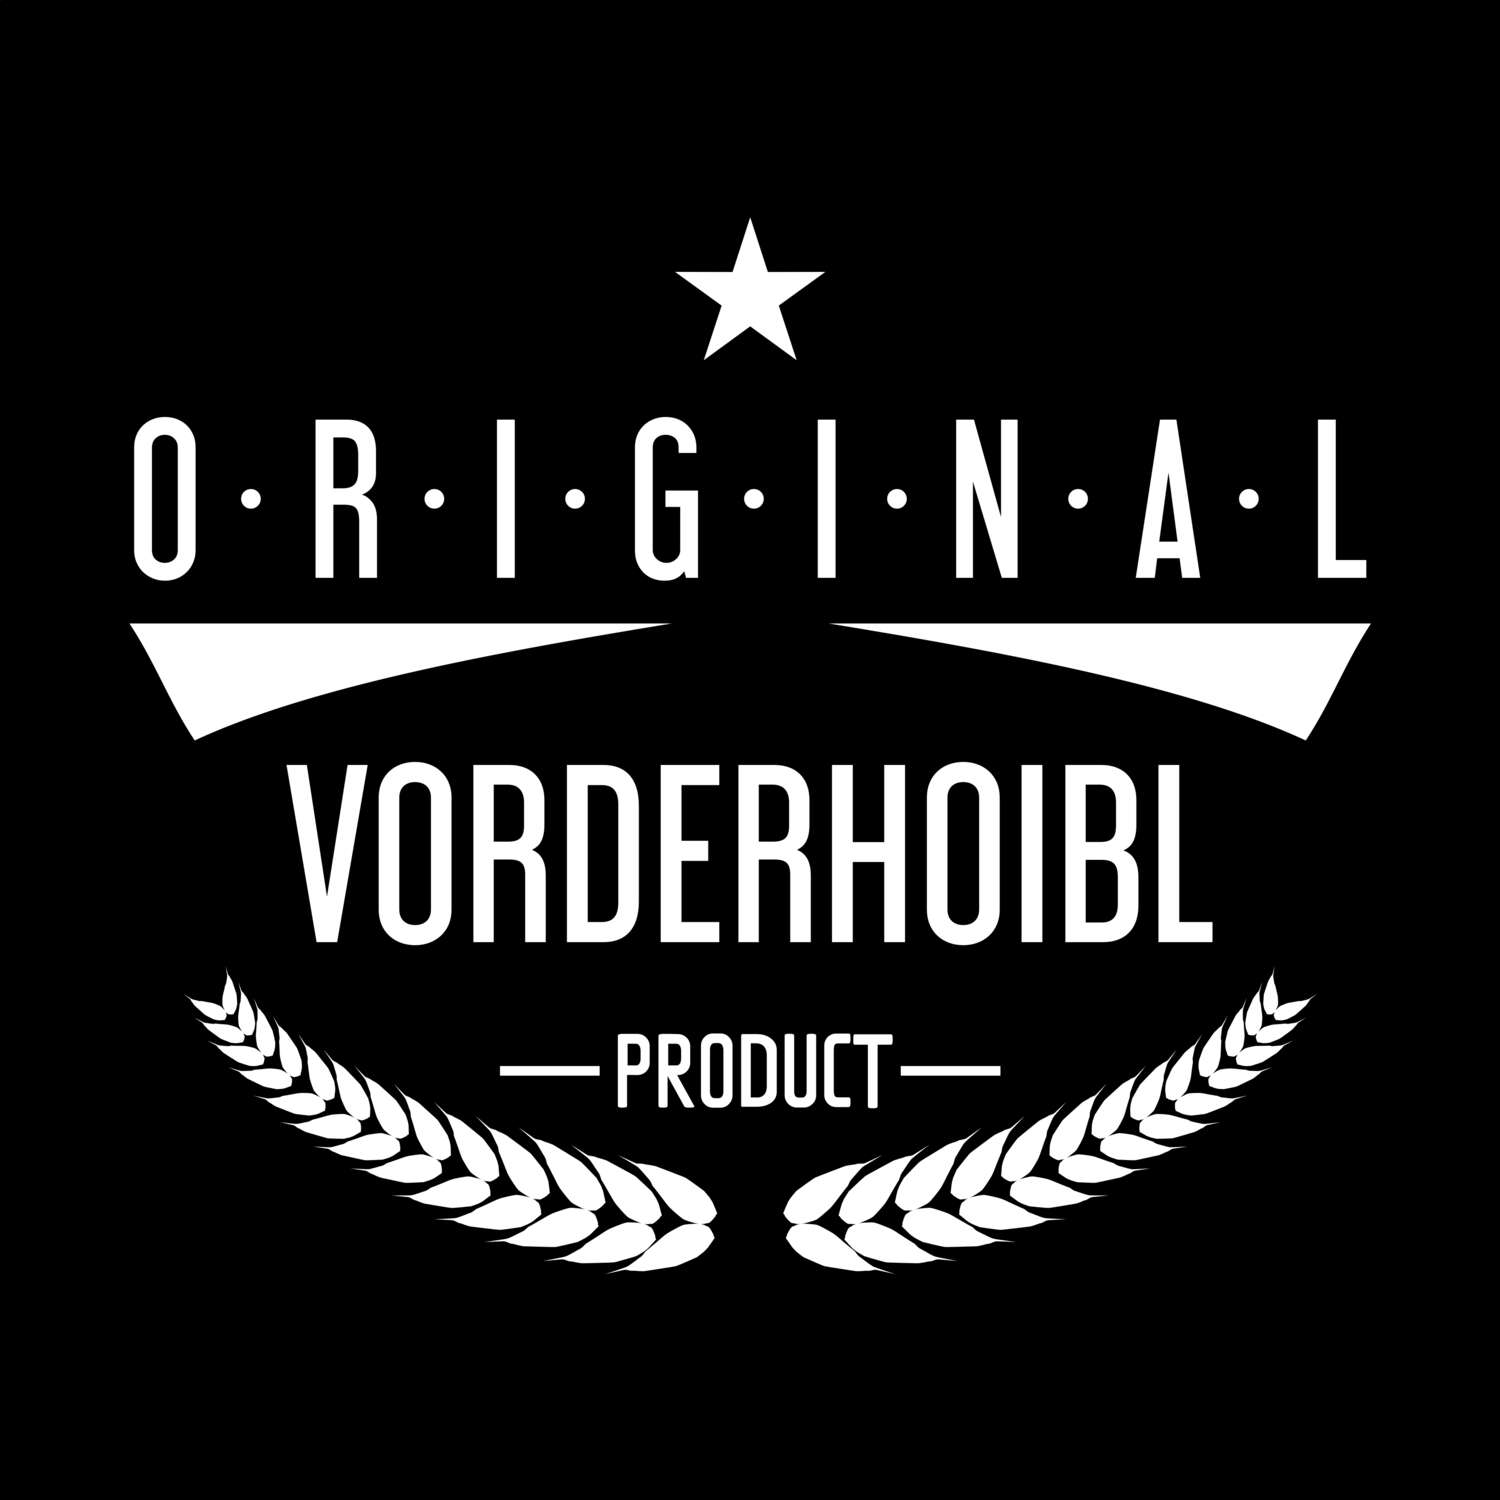 Vorderhoibl T-Shirt »Original Product«